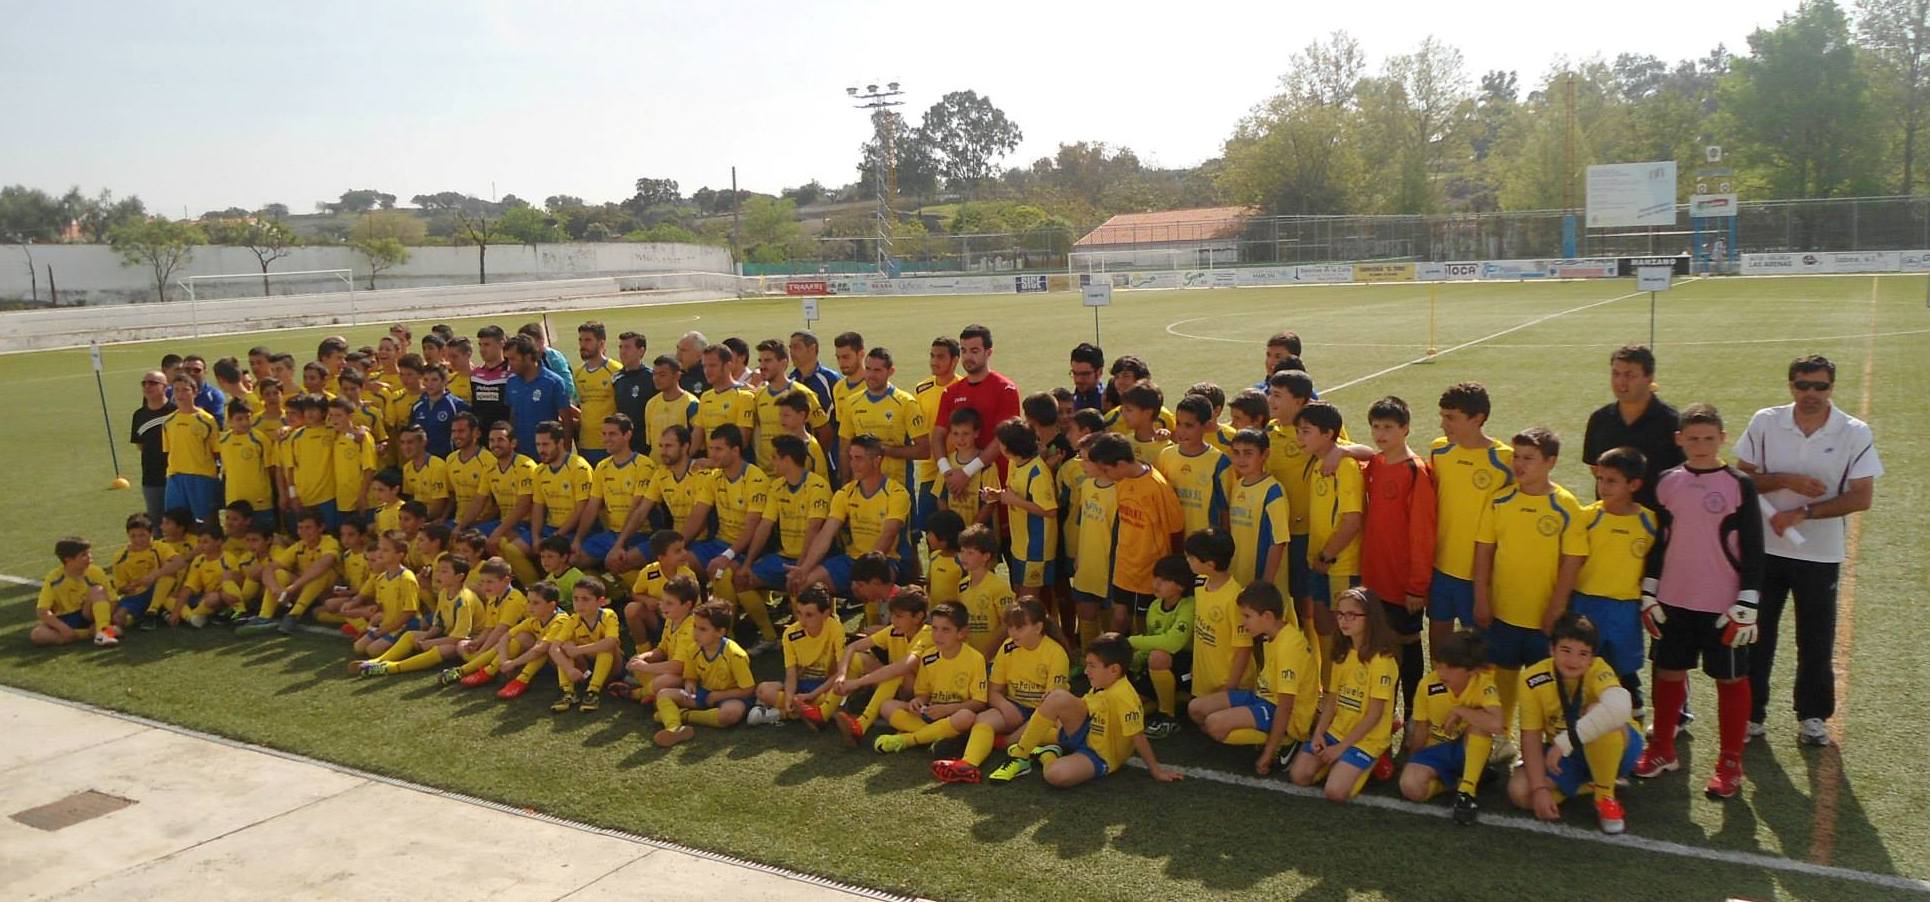 Presentación de la escuela de futbol de la A.D. La Solera